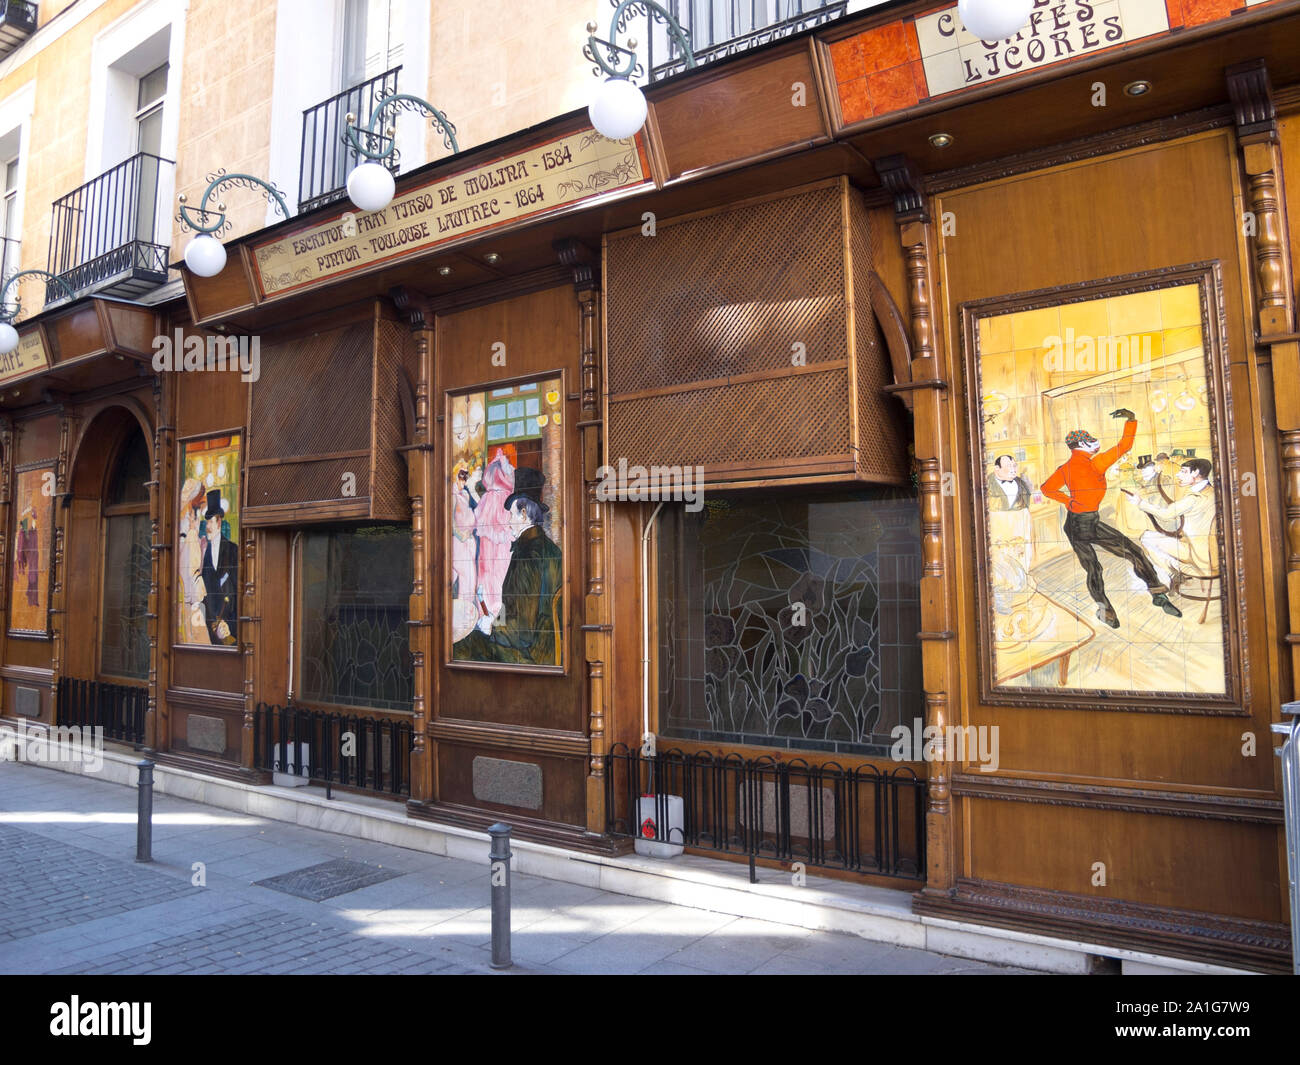 MADRID - FEB 23 : Mosaïque de Toulouse Lautrec le 23 février 2013 à Madrid, Espagne. Mosaïque sur la façade d'un café à Madrid 1864, inspirée d'un painti Banque D'Images